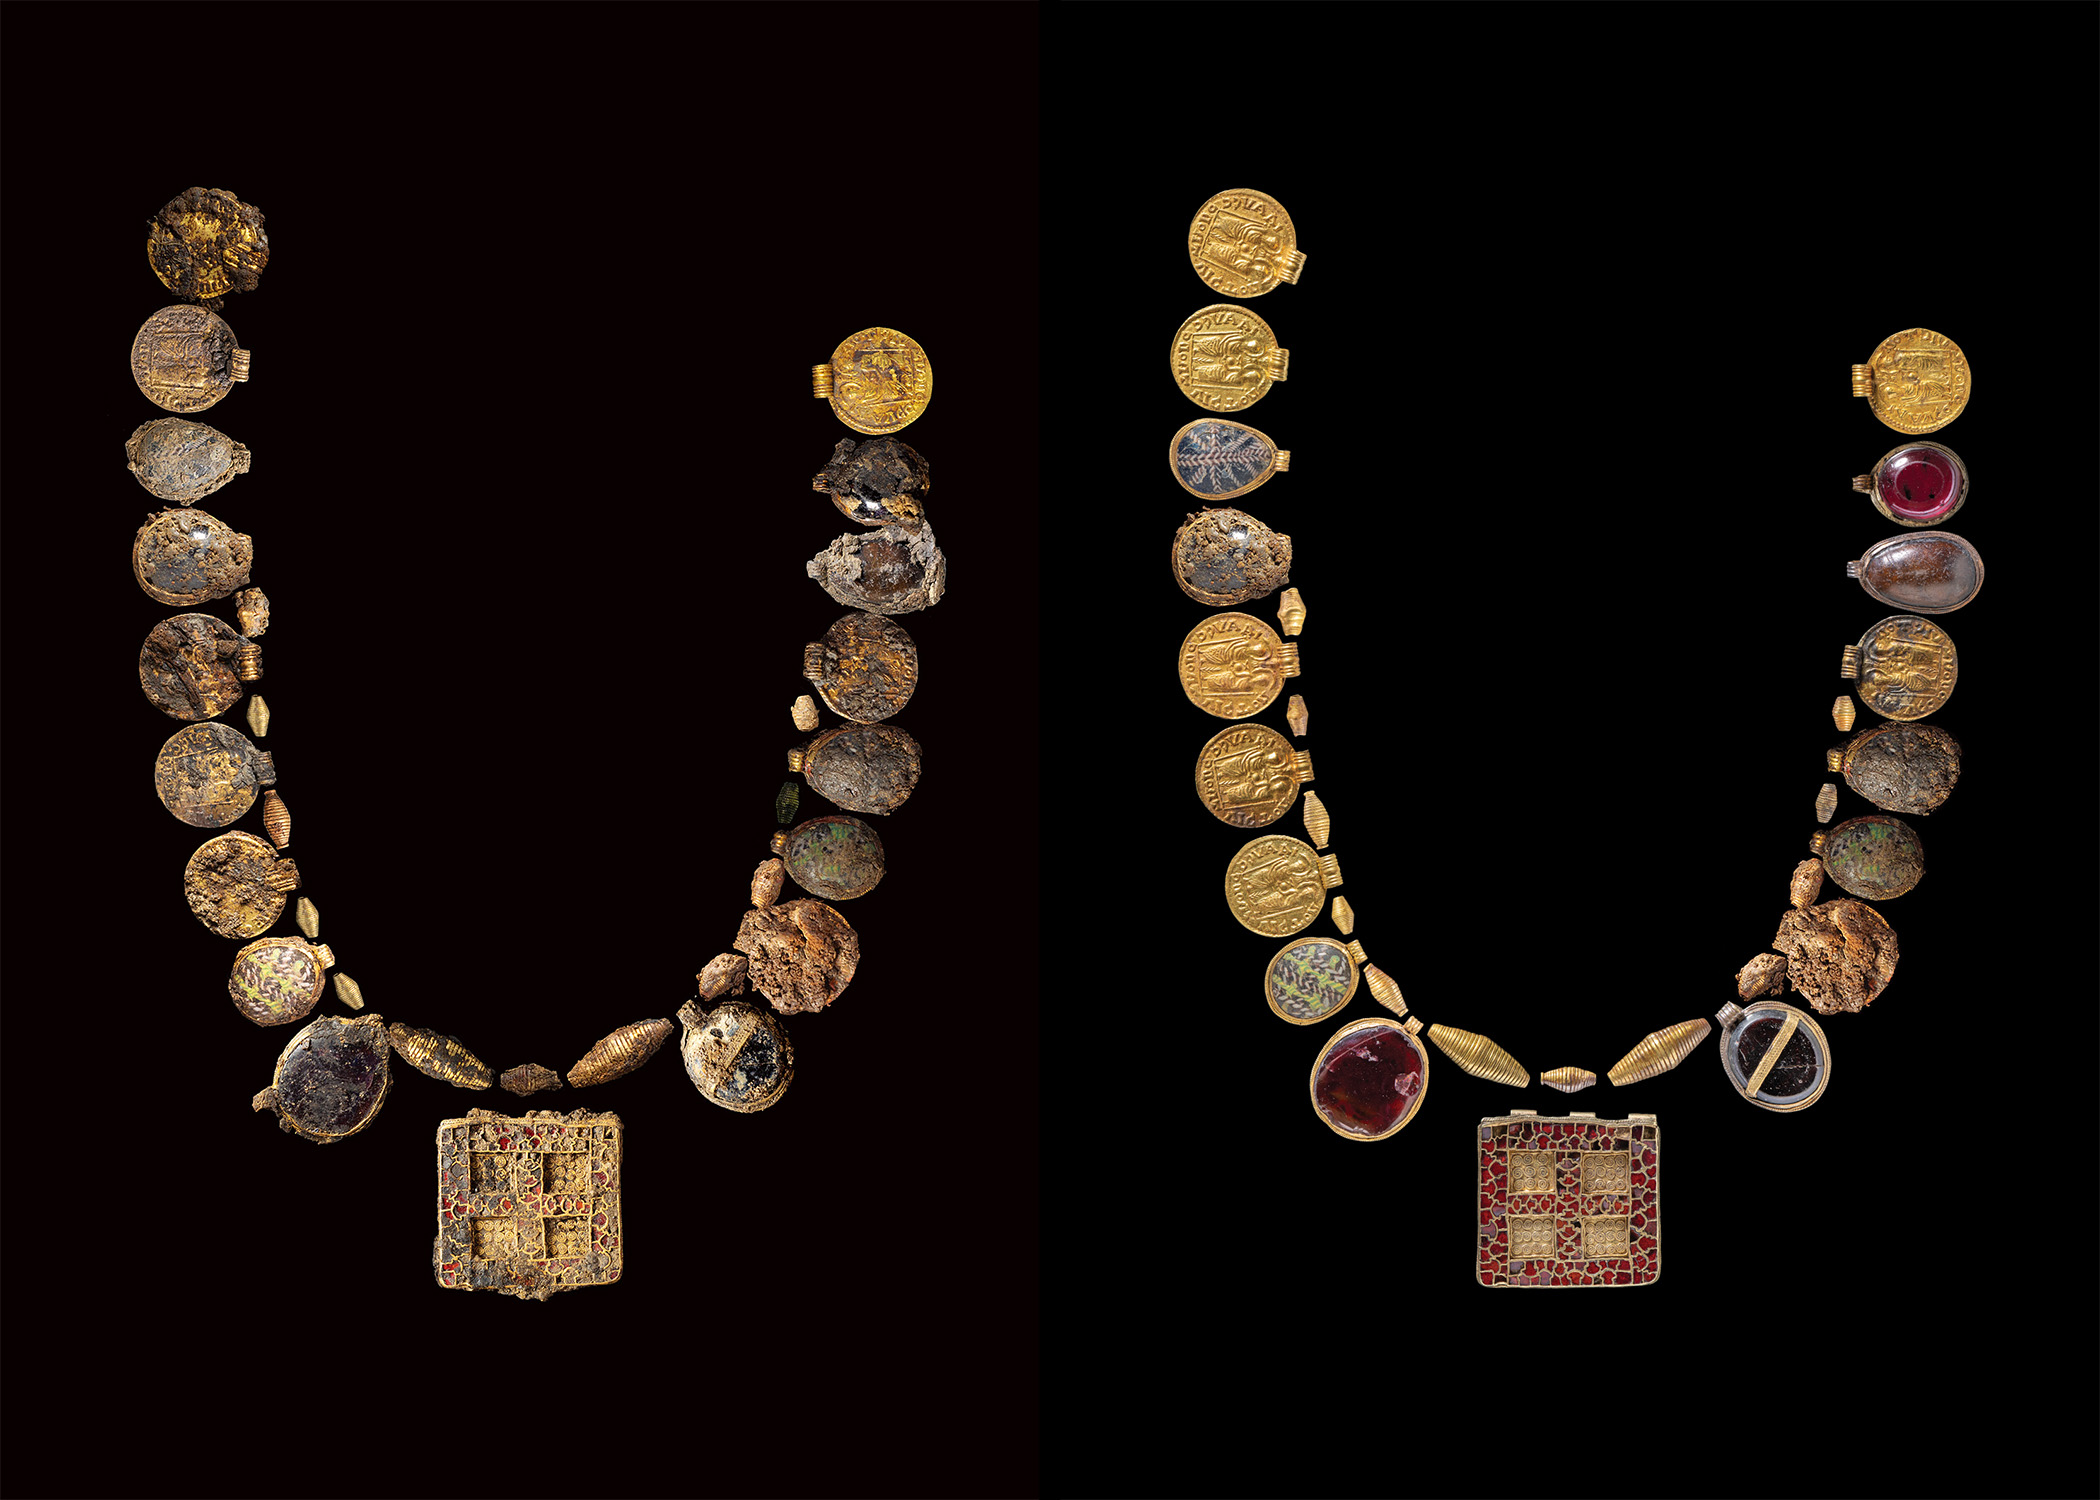 Erstaunliches Pektoral und Halskette in einem Frauengrab aus dem siebten Jahrhundert